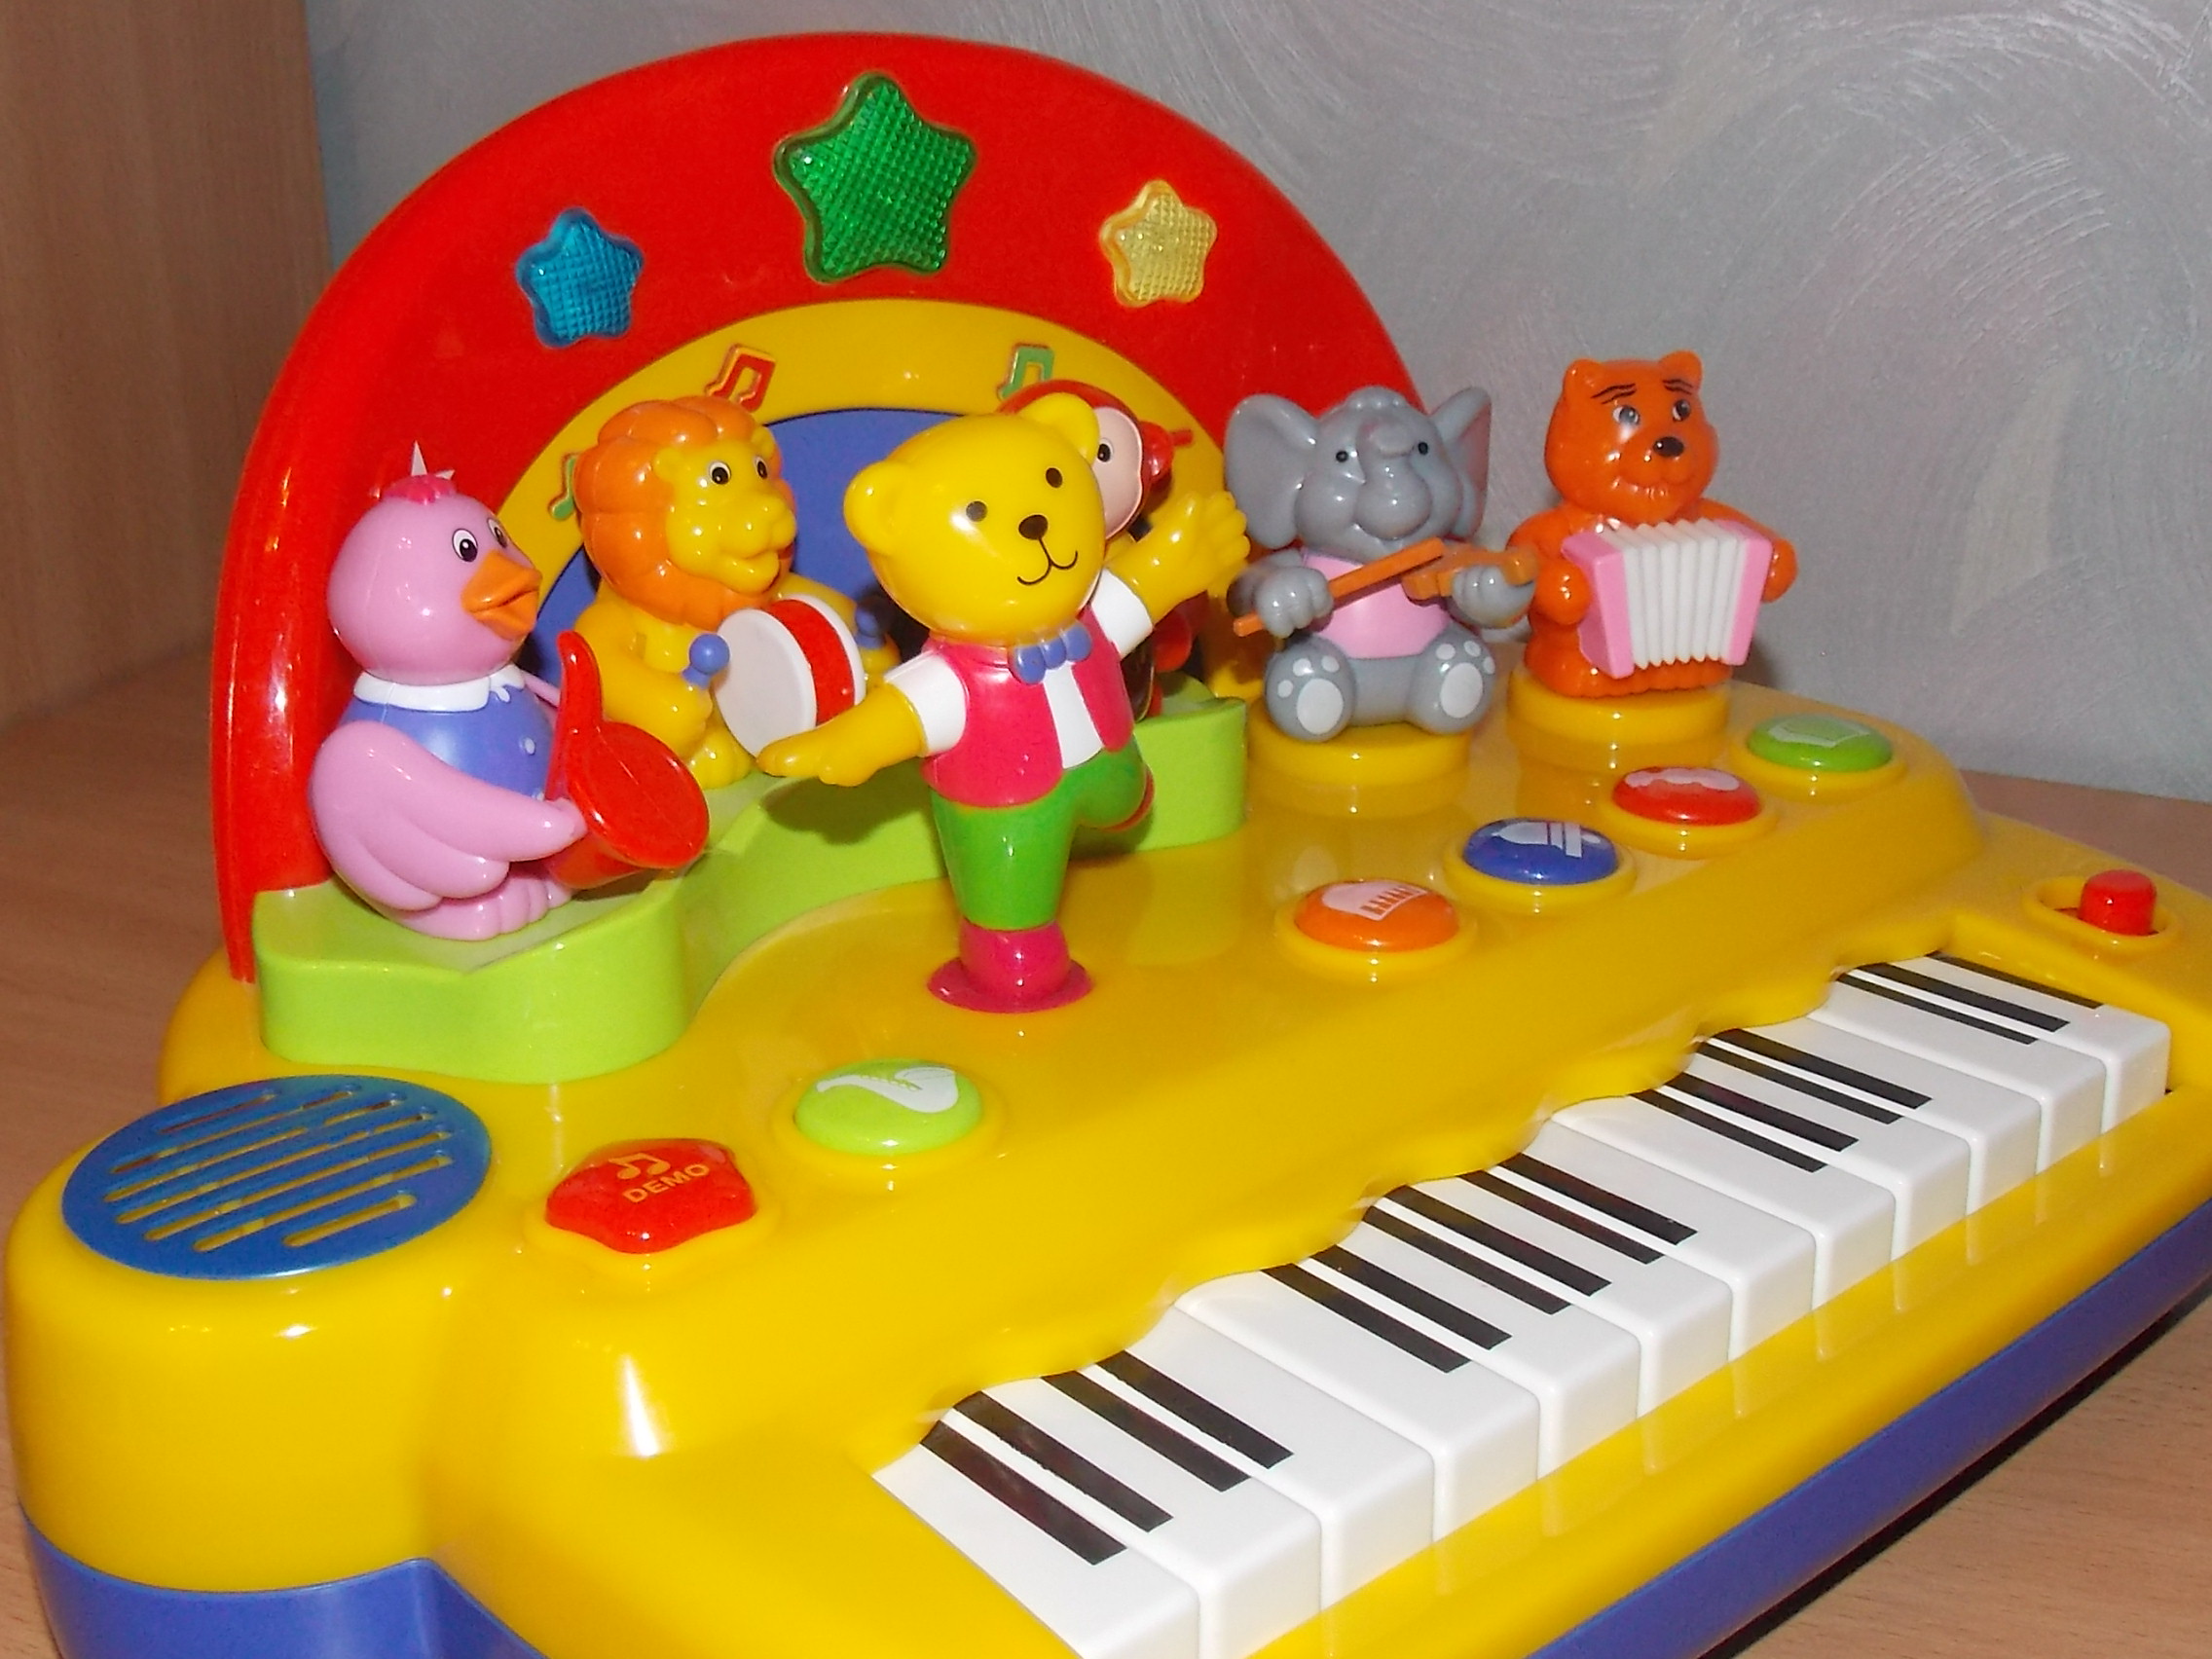 Игра музыкальная игрушка. Kiddieland пианино Танцующий мишка. Kiddieland пианино kid051383. Kiddieland пианино kid043455. Пианино Киддиленд оркестр.